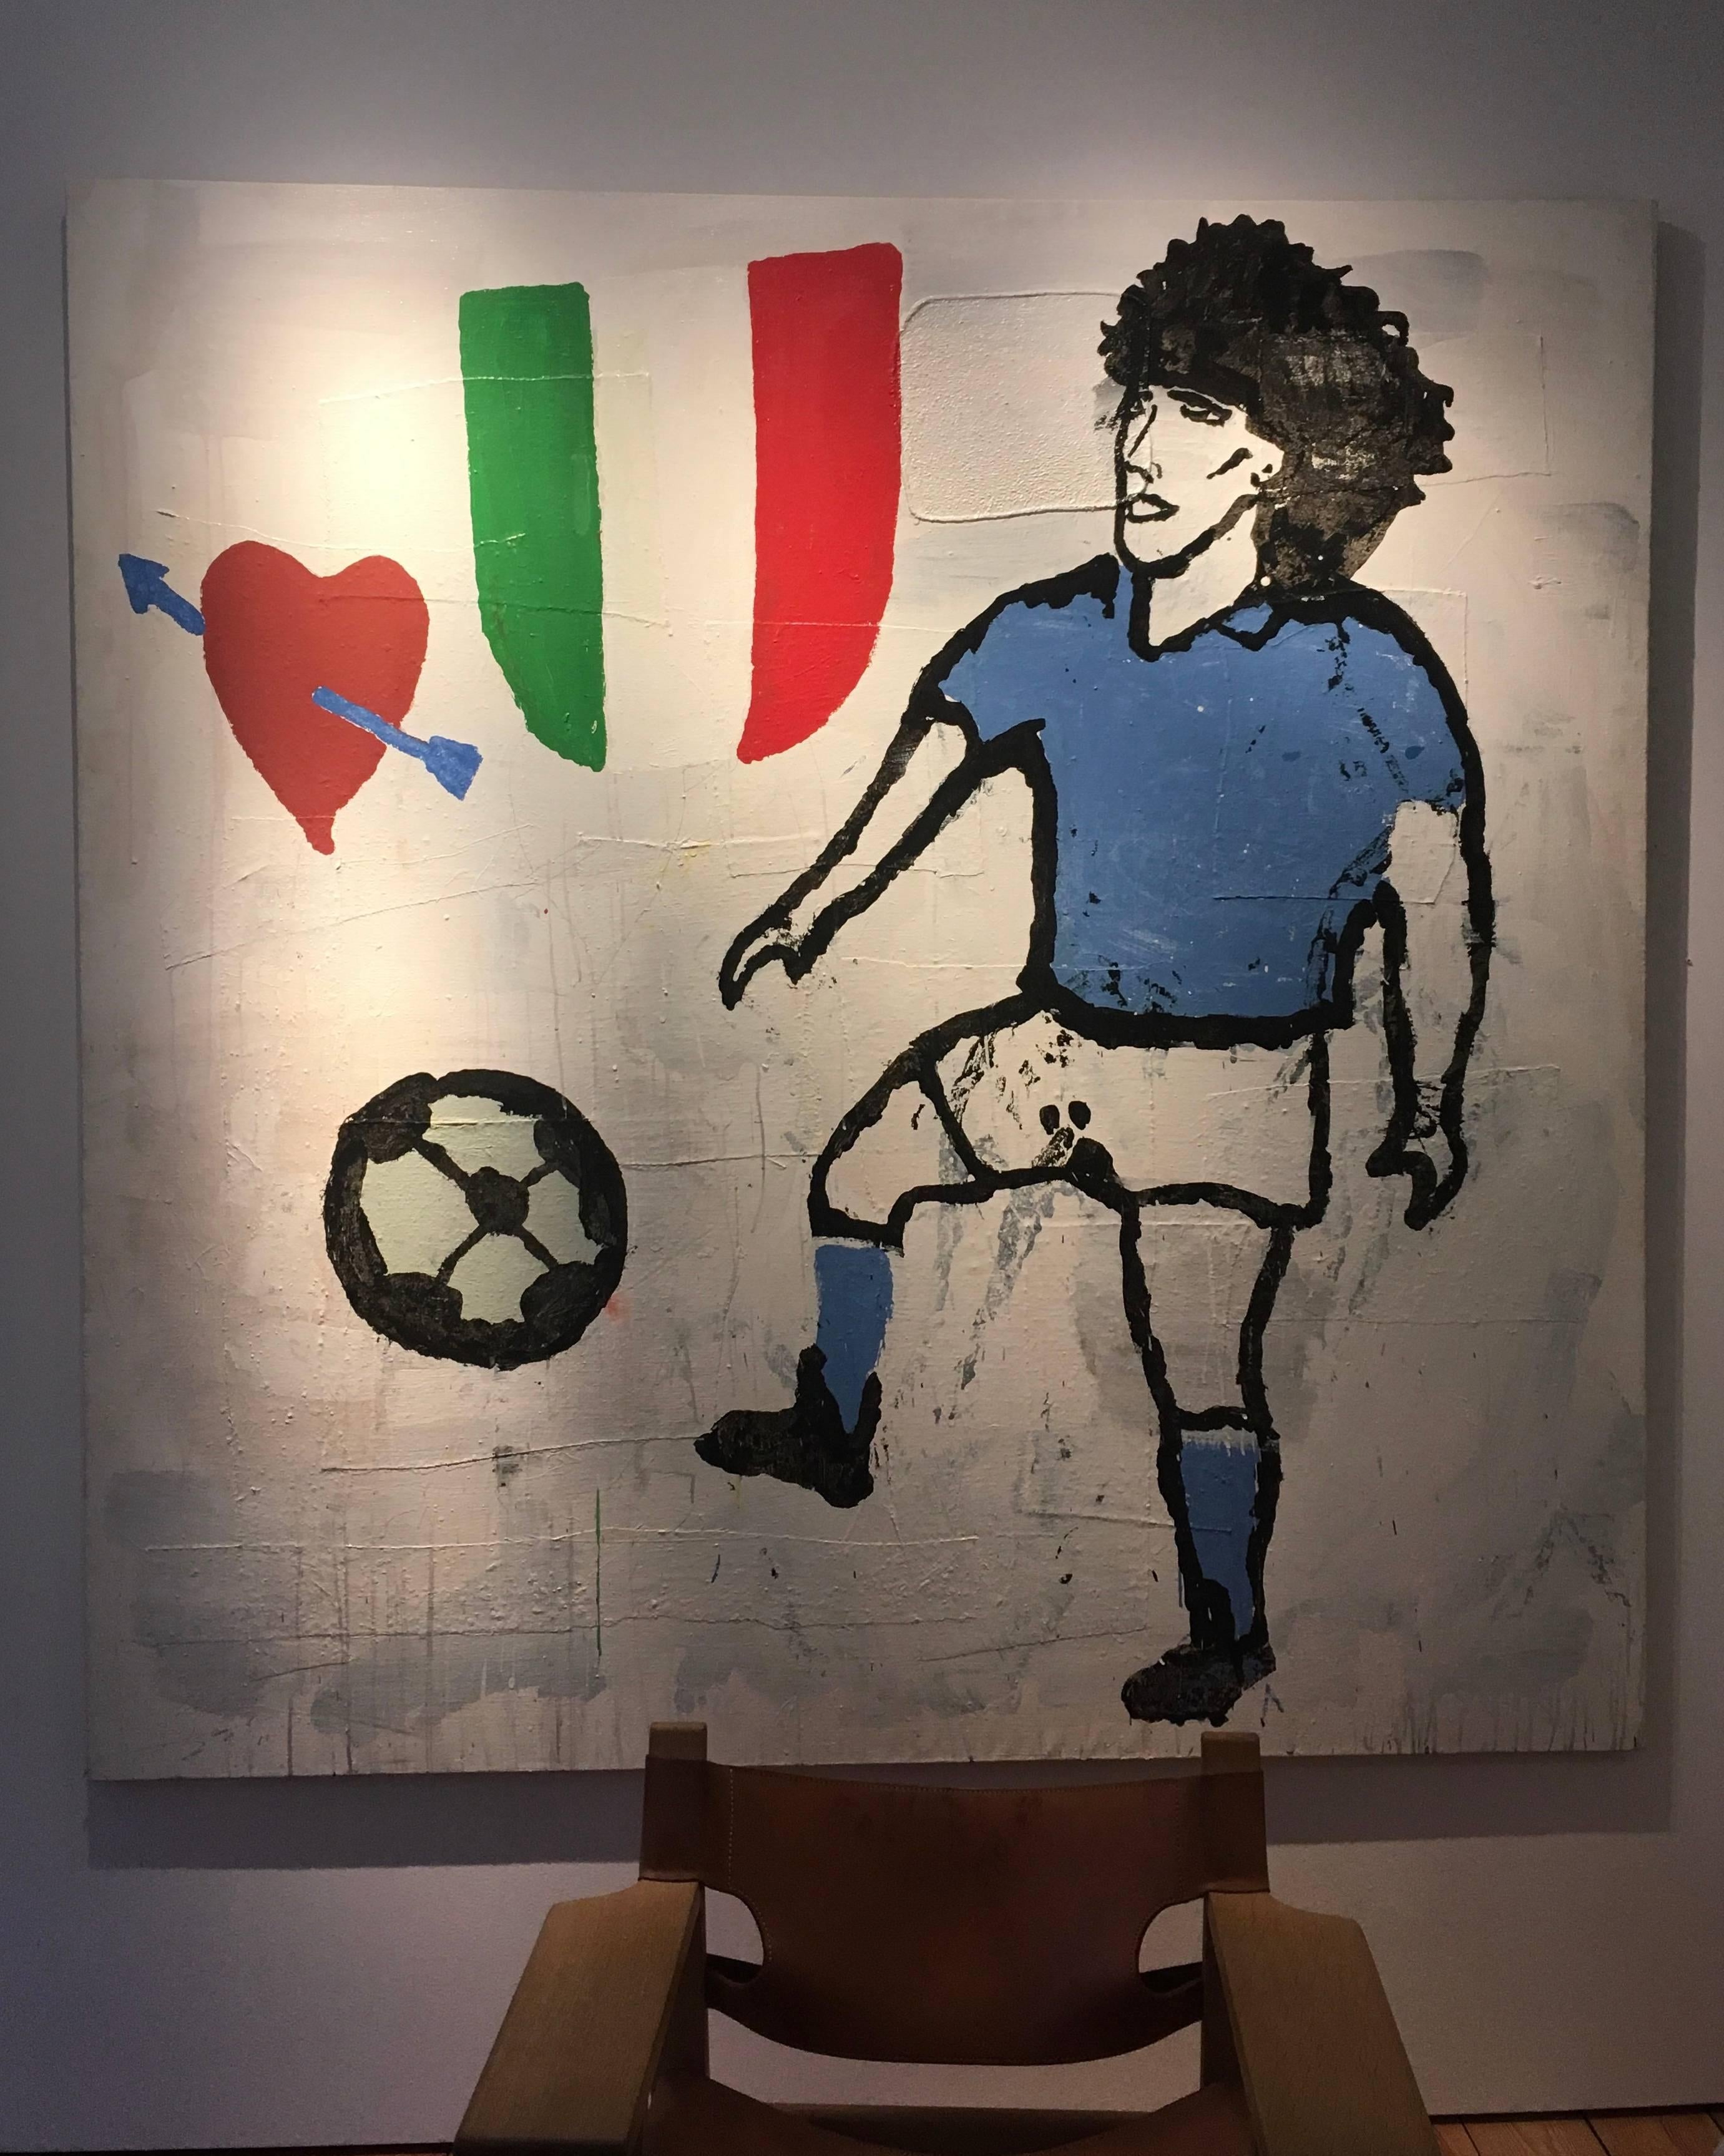 Maradona - Painting by Donald Baechler